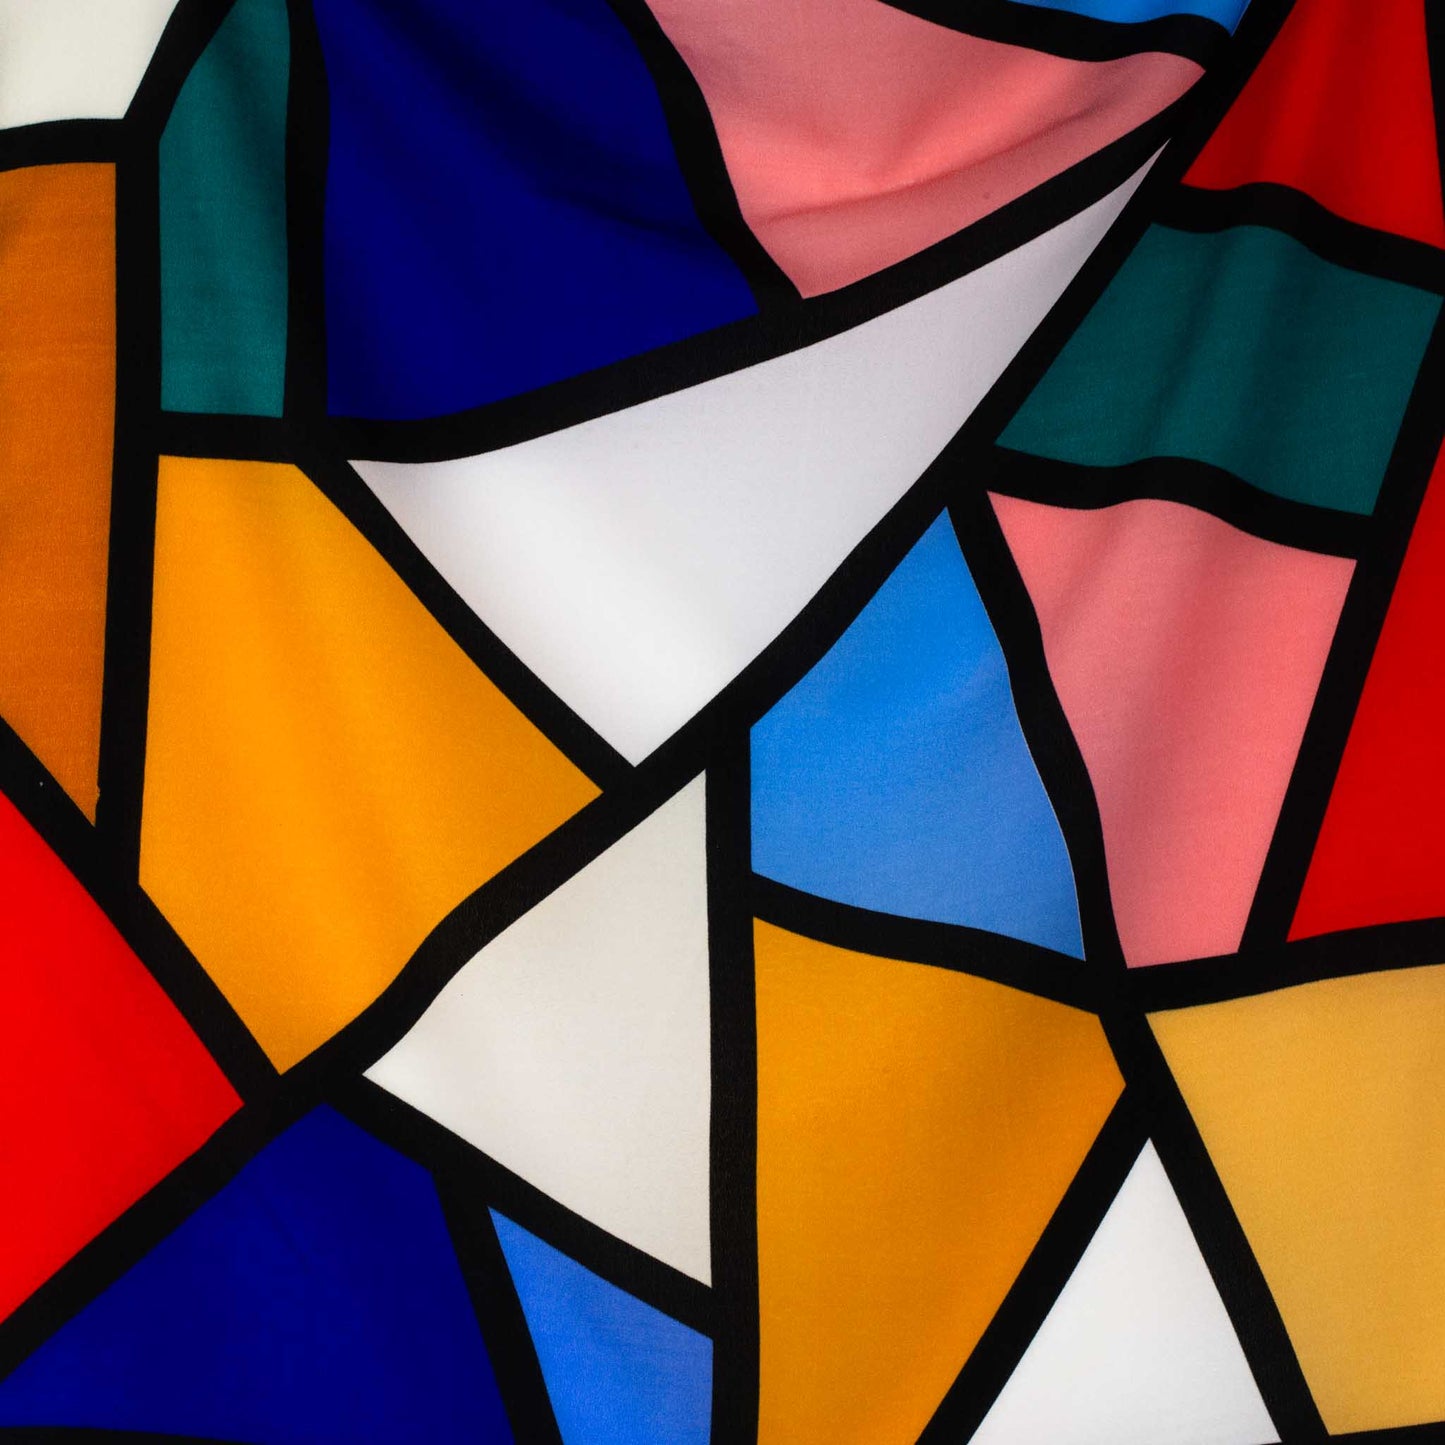 Eșarfă damă din satin , imprimeu cu secțiuni geometrice, 55 x 55 cm - Multicolor